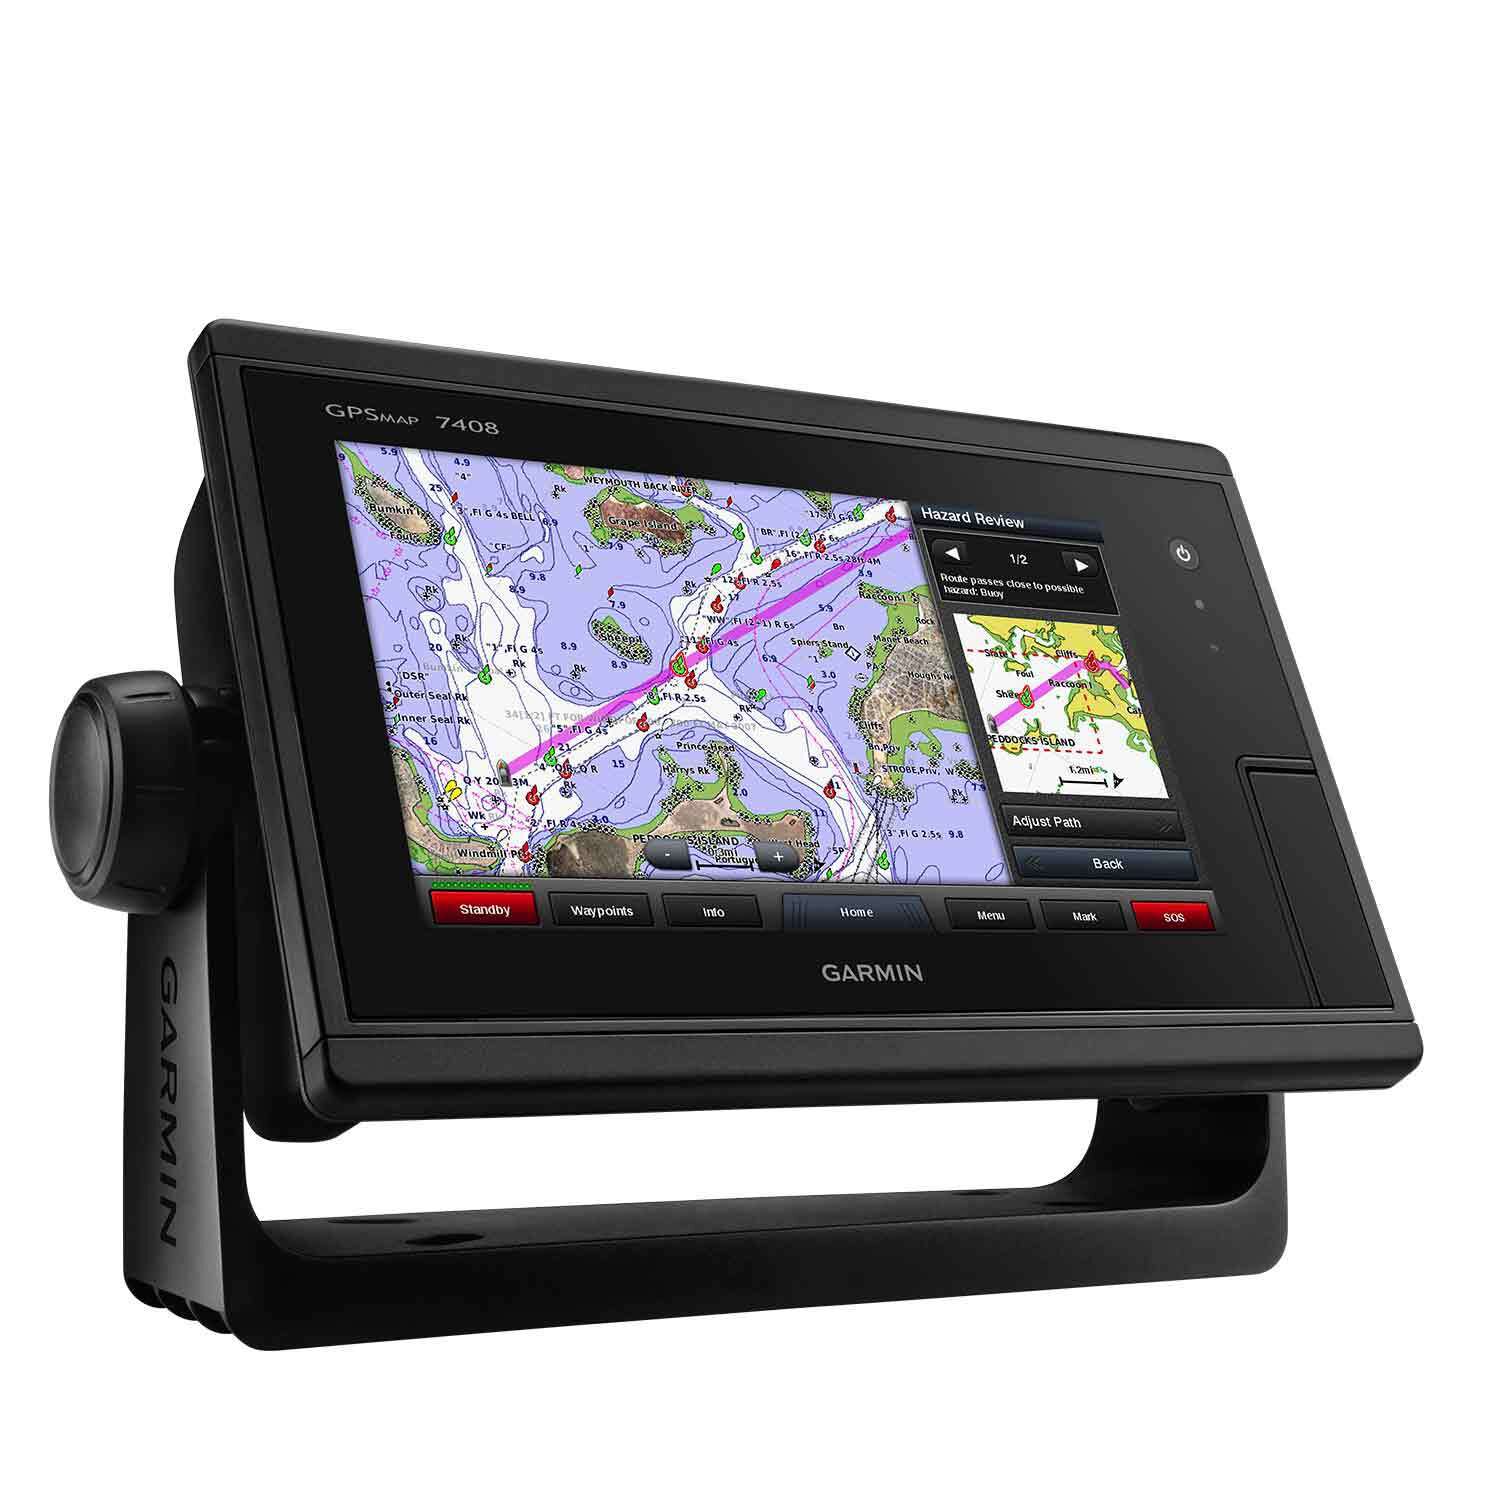 GPSMAP 7408 Multifunction Display with Worldwide Basemap Charts